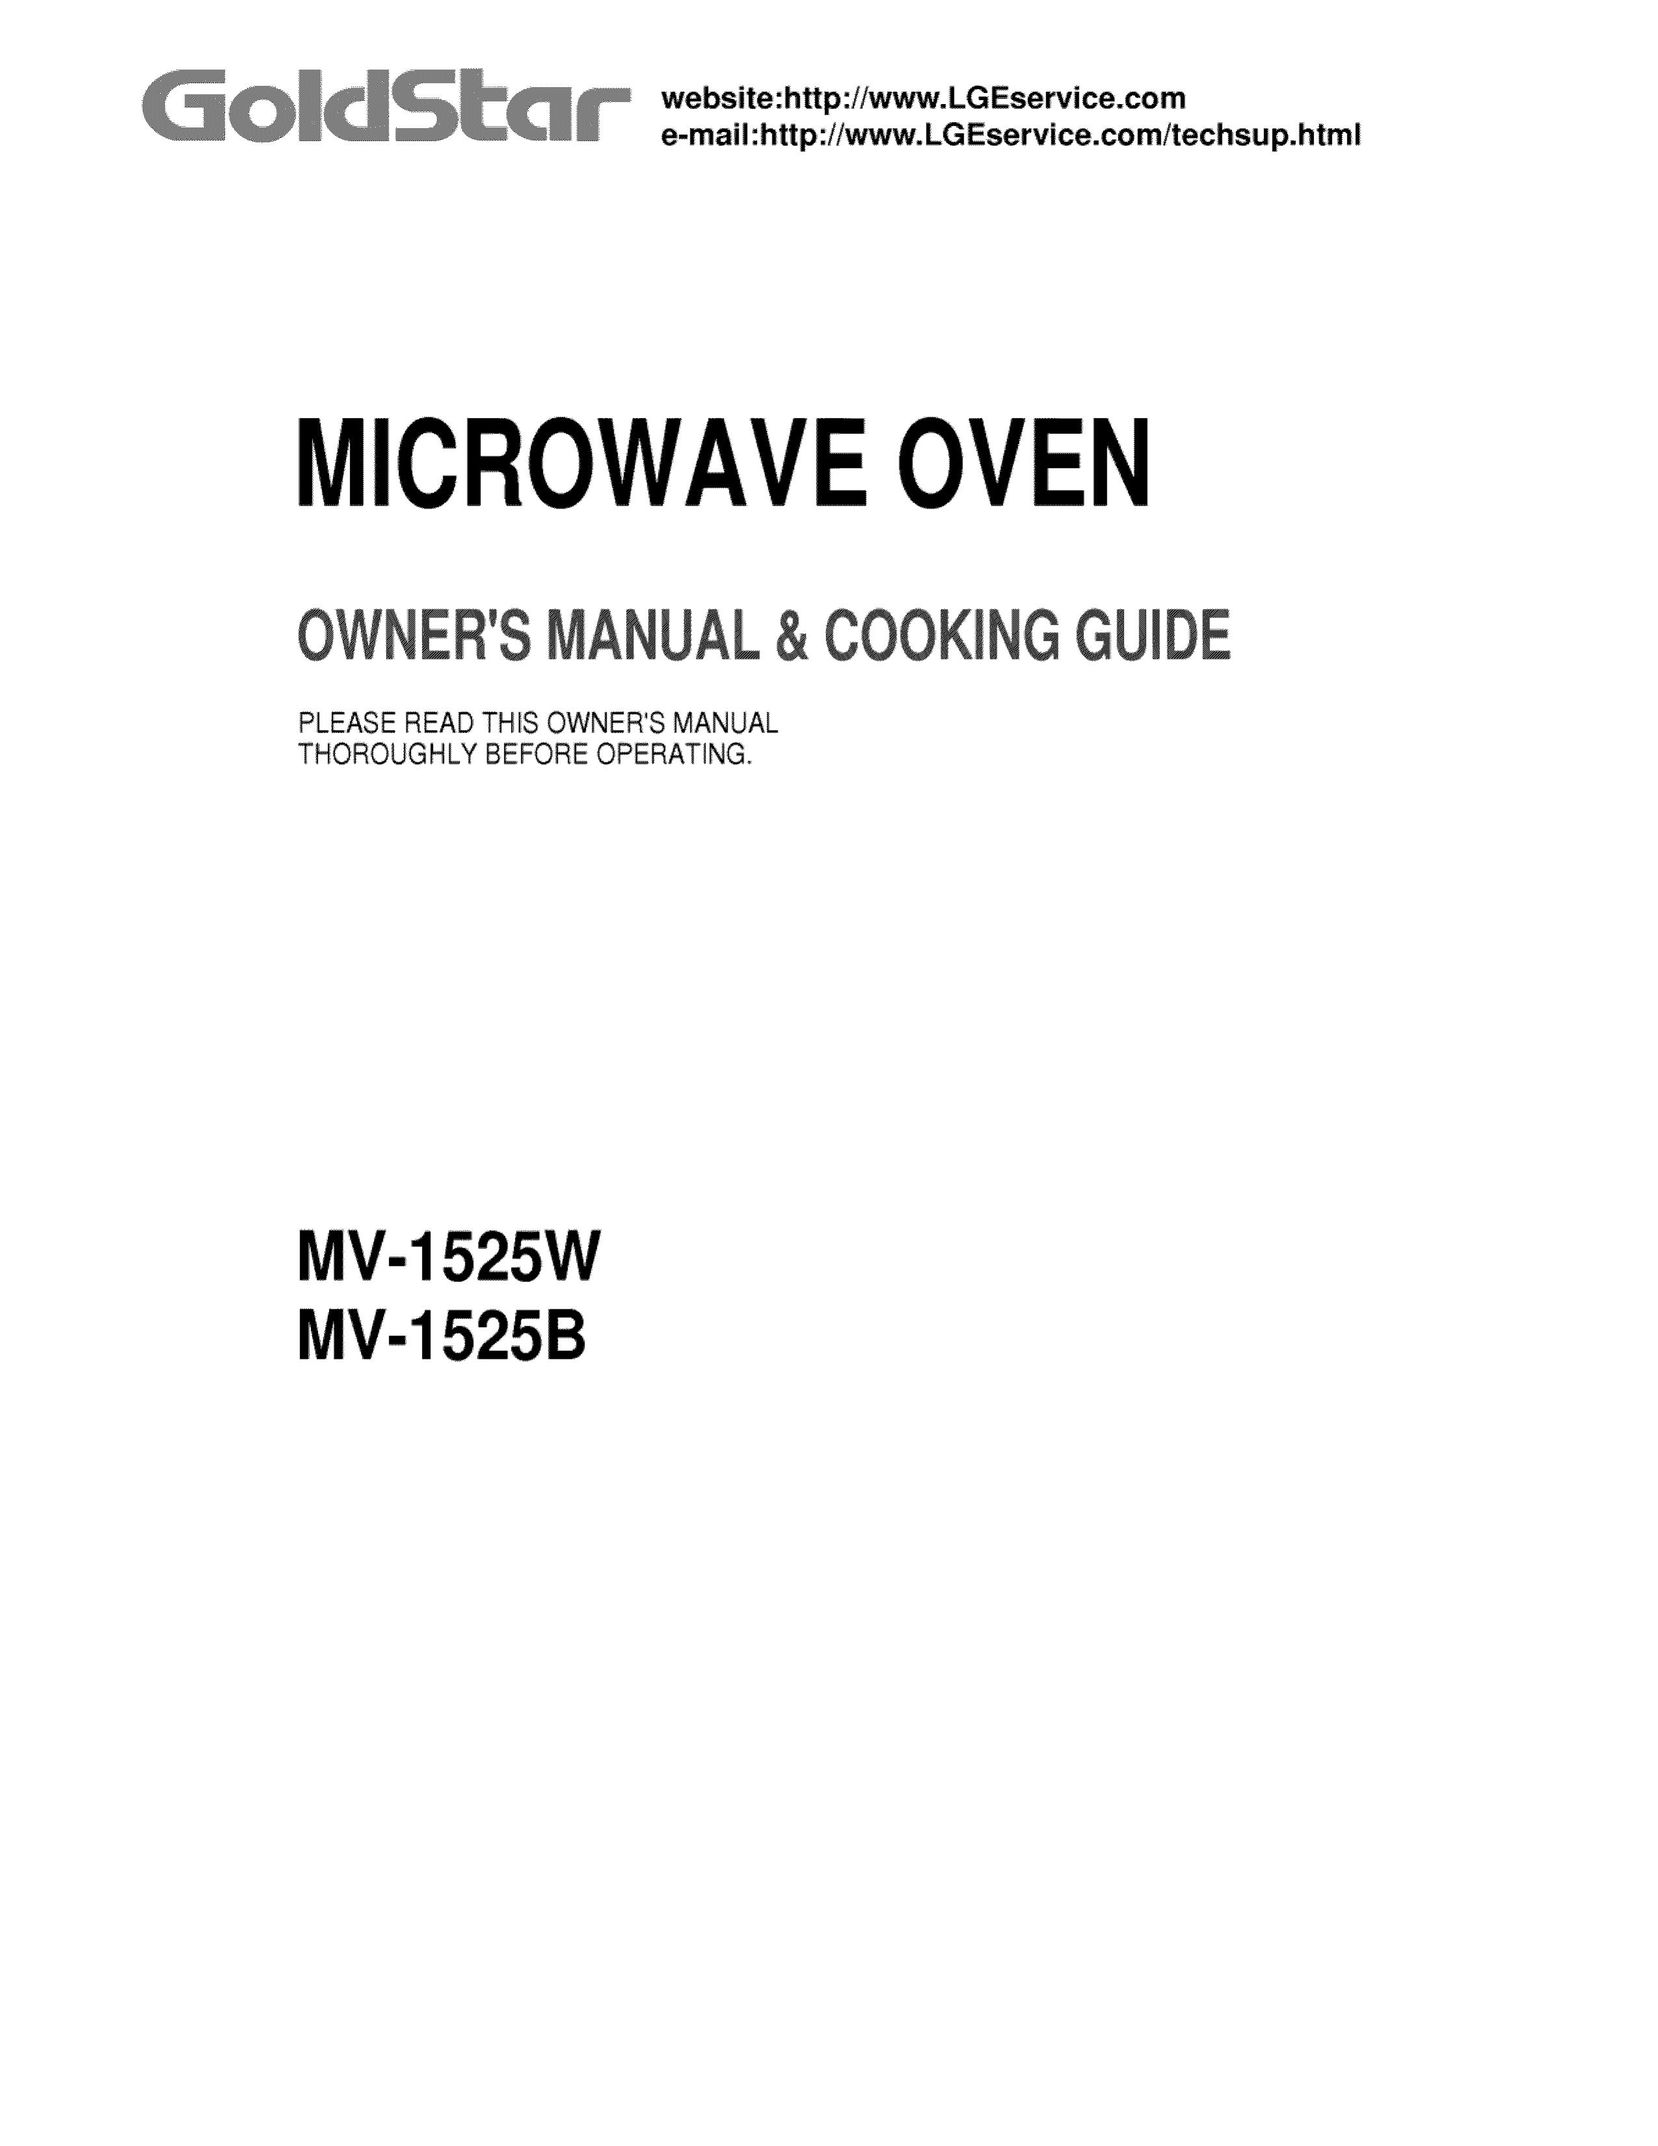 Goldstar MV-1525W Microwave Oven User Manual